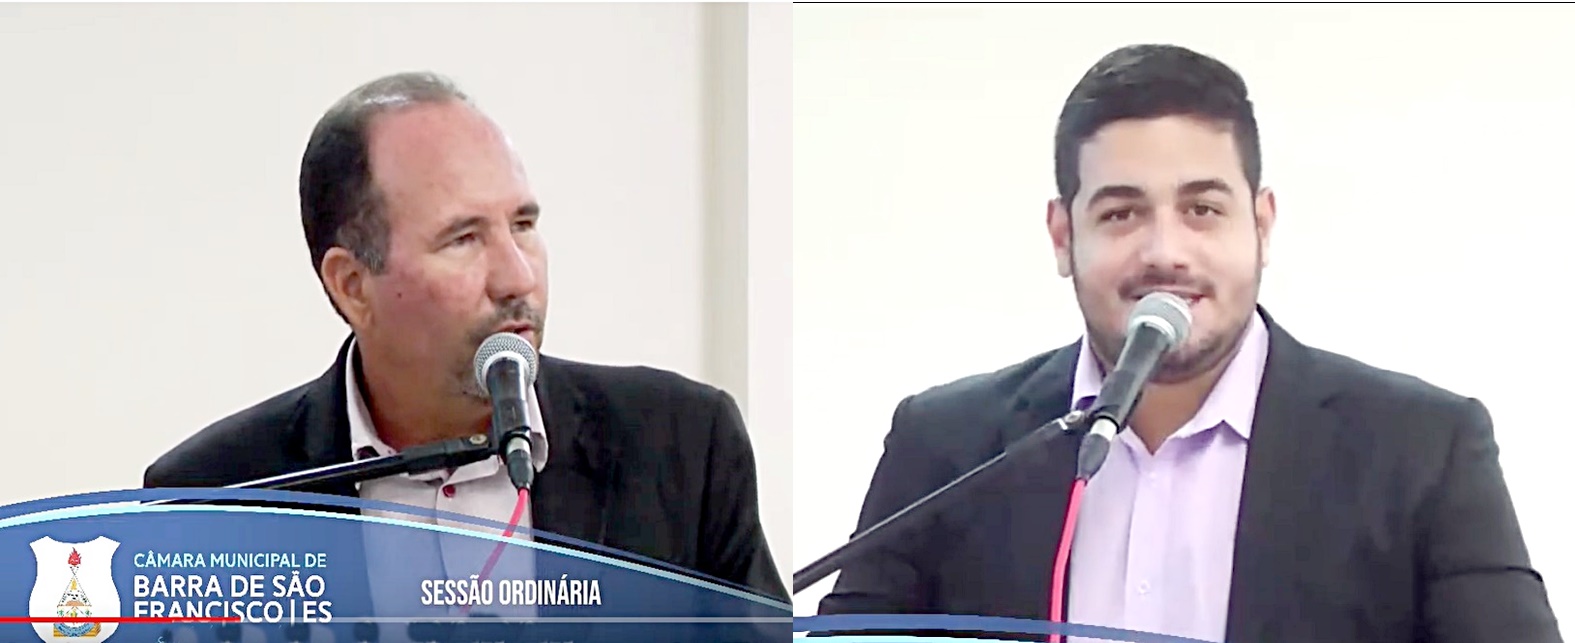 Vereadores Higor e Jonciclé questionam vice-prefeito